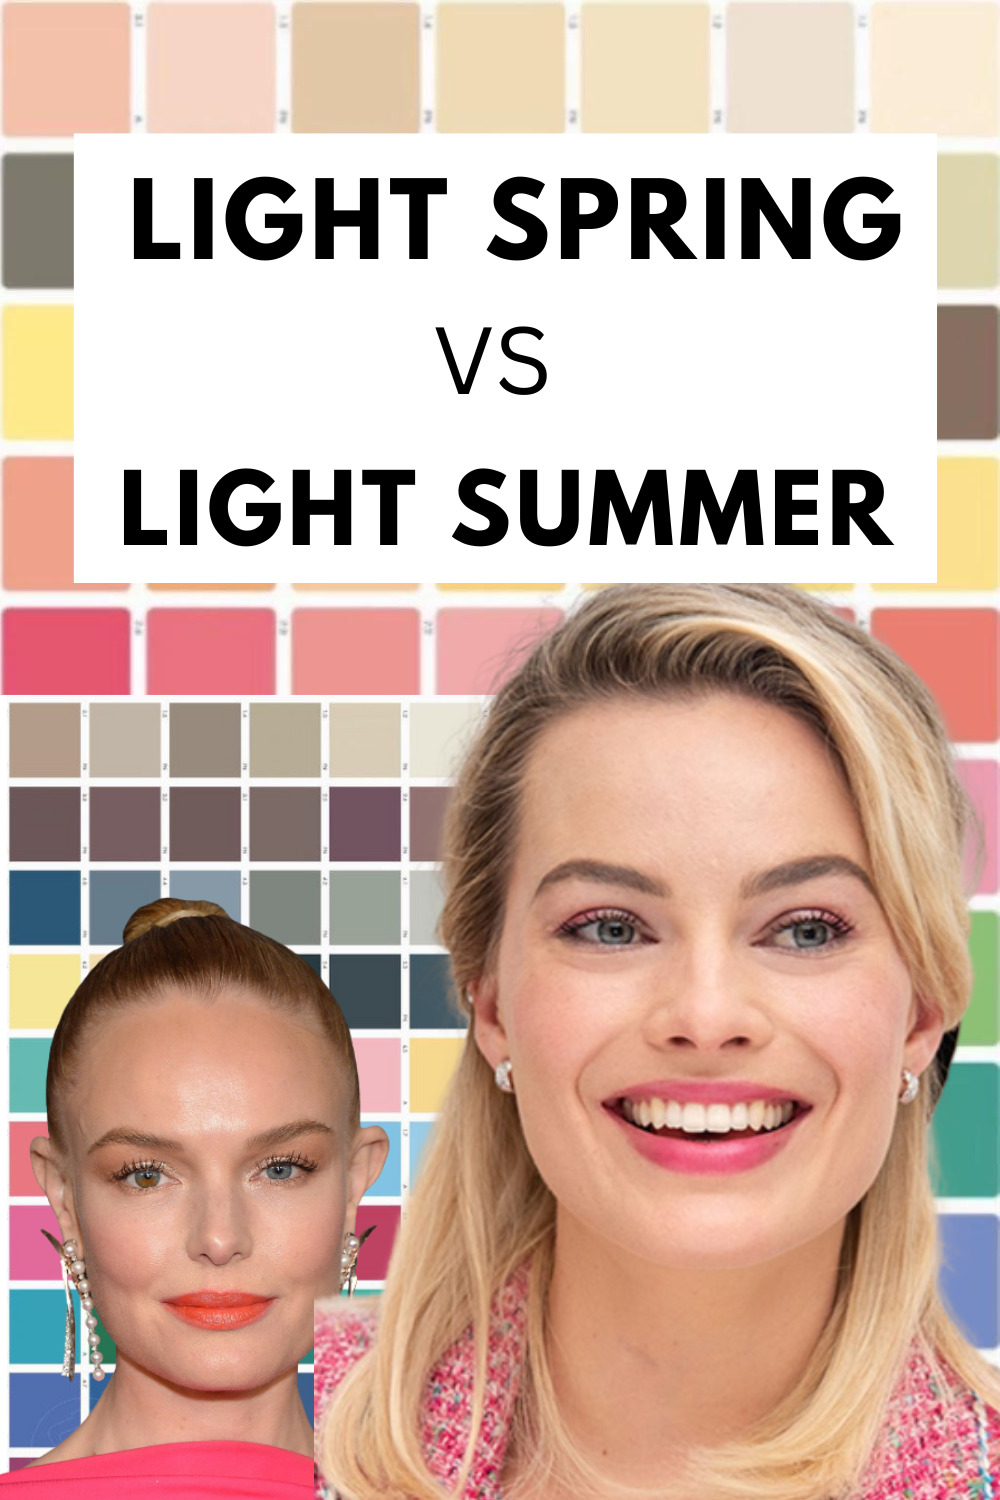 light summer vs light spring